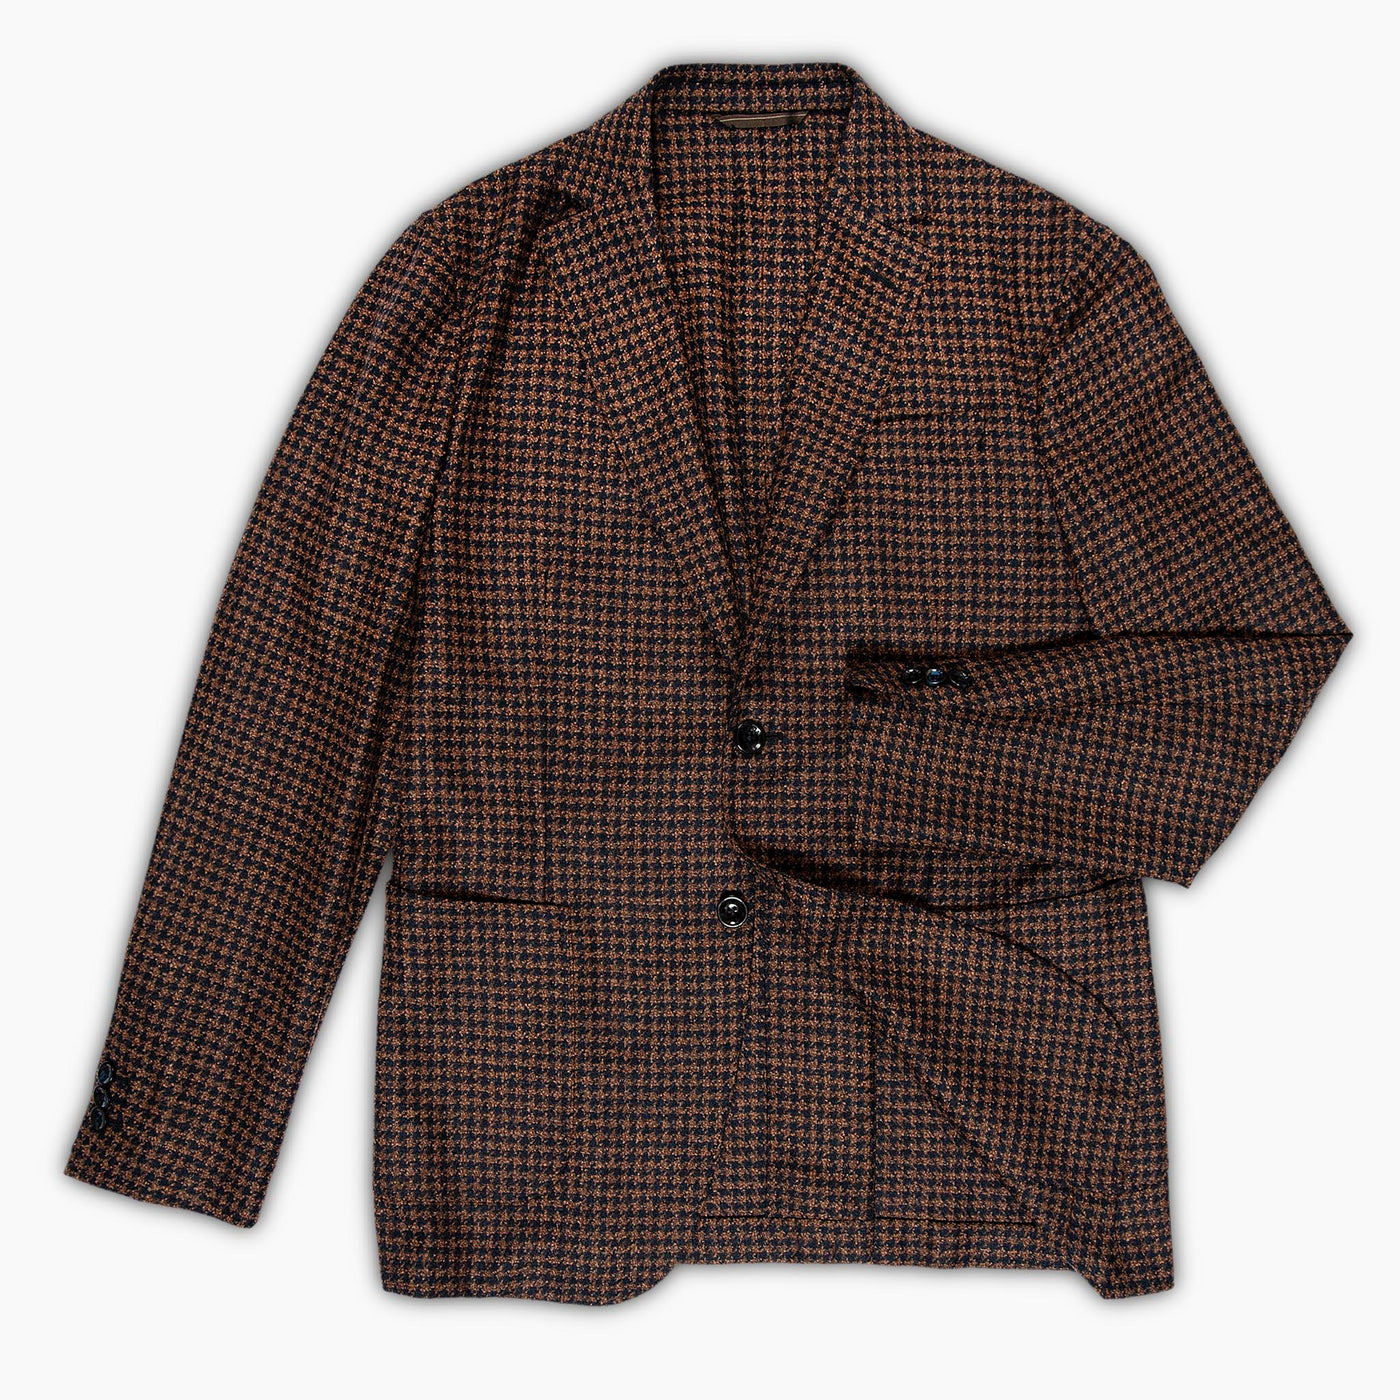 Benoit blazer pied de poule flannel wool, silk and cashmere(Blue and Crete)